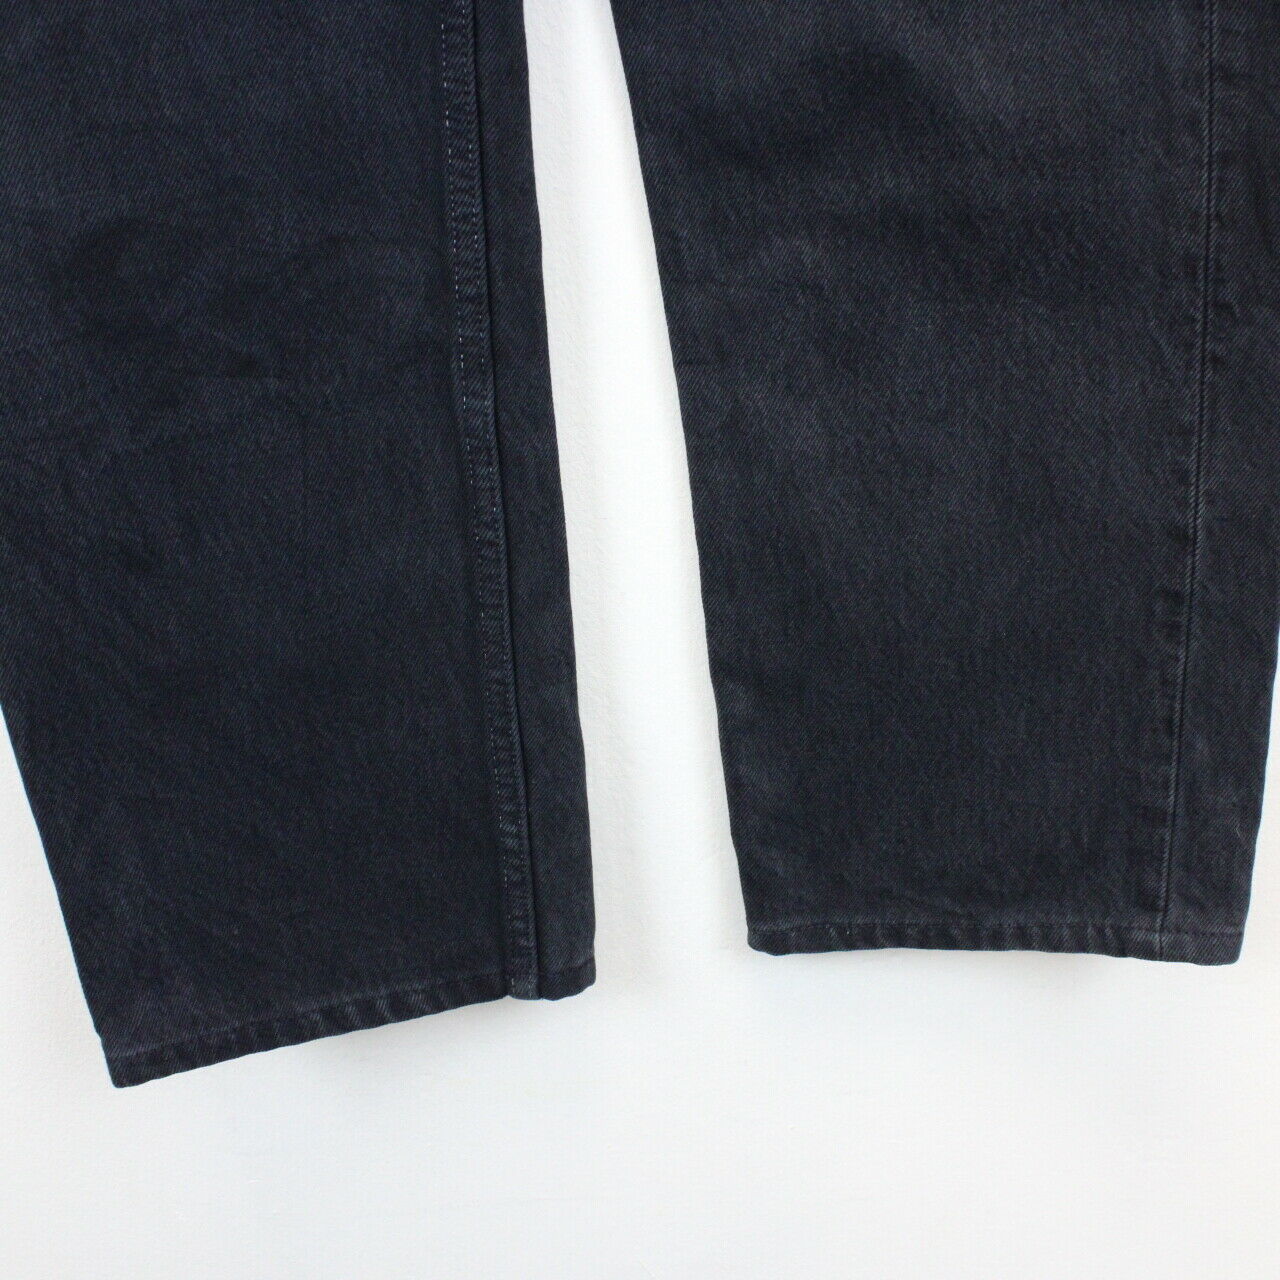 LEVIS 501 Jeans Black | W28 L30